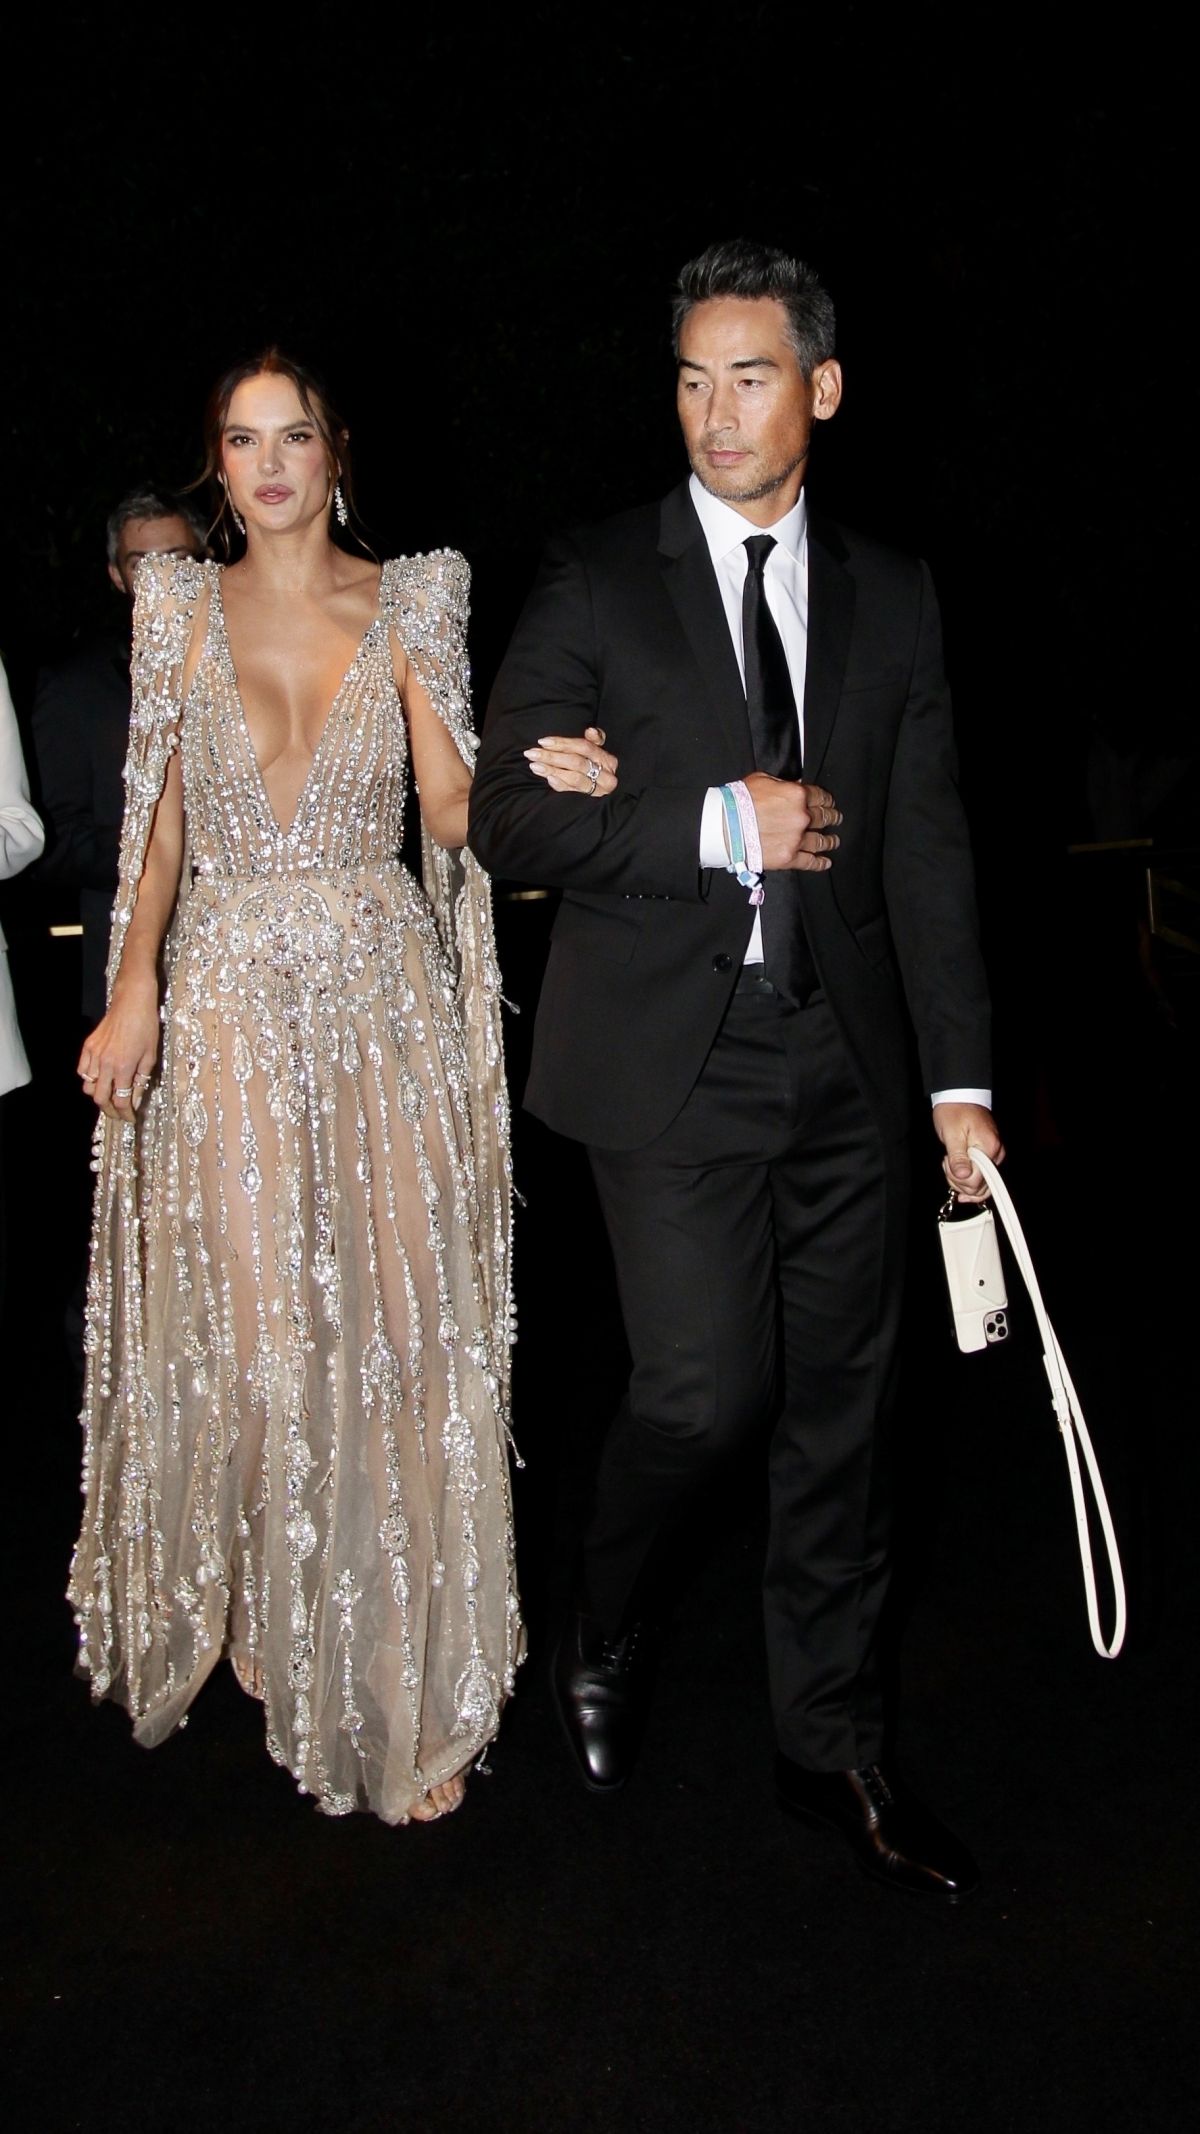 Alessandra Ambrosio with her model boyfriend Richard Lee at amfAR Gala 2021 in Los Angeles 11/04/2021